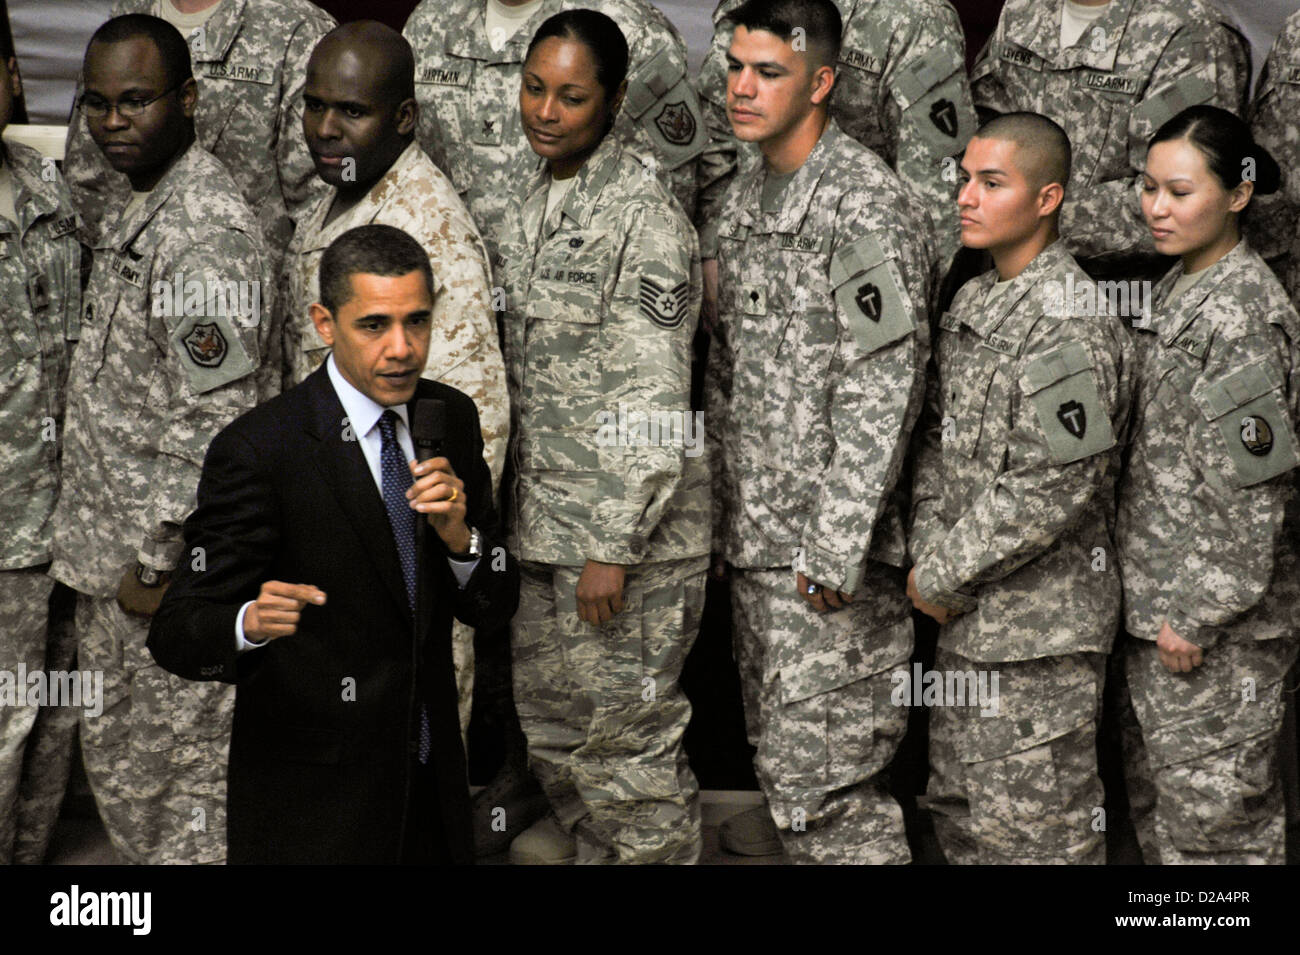 Président américain Barack Obama parle des soldats U.S Marines marins aviateurs civils affectés Corps multinational - Iraq Faw Palace Banque D'Images